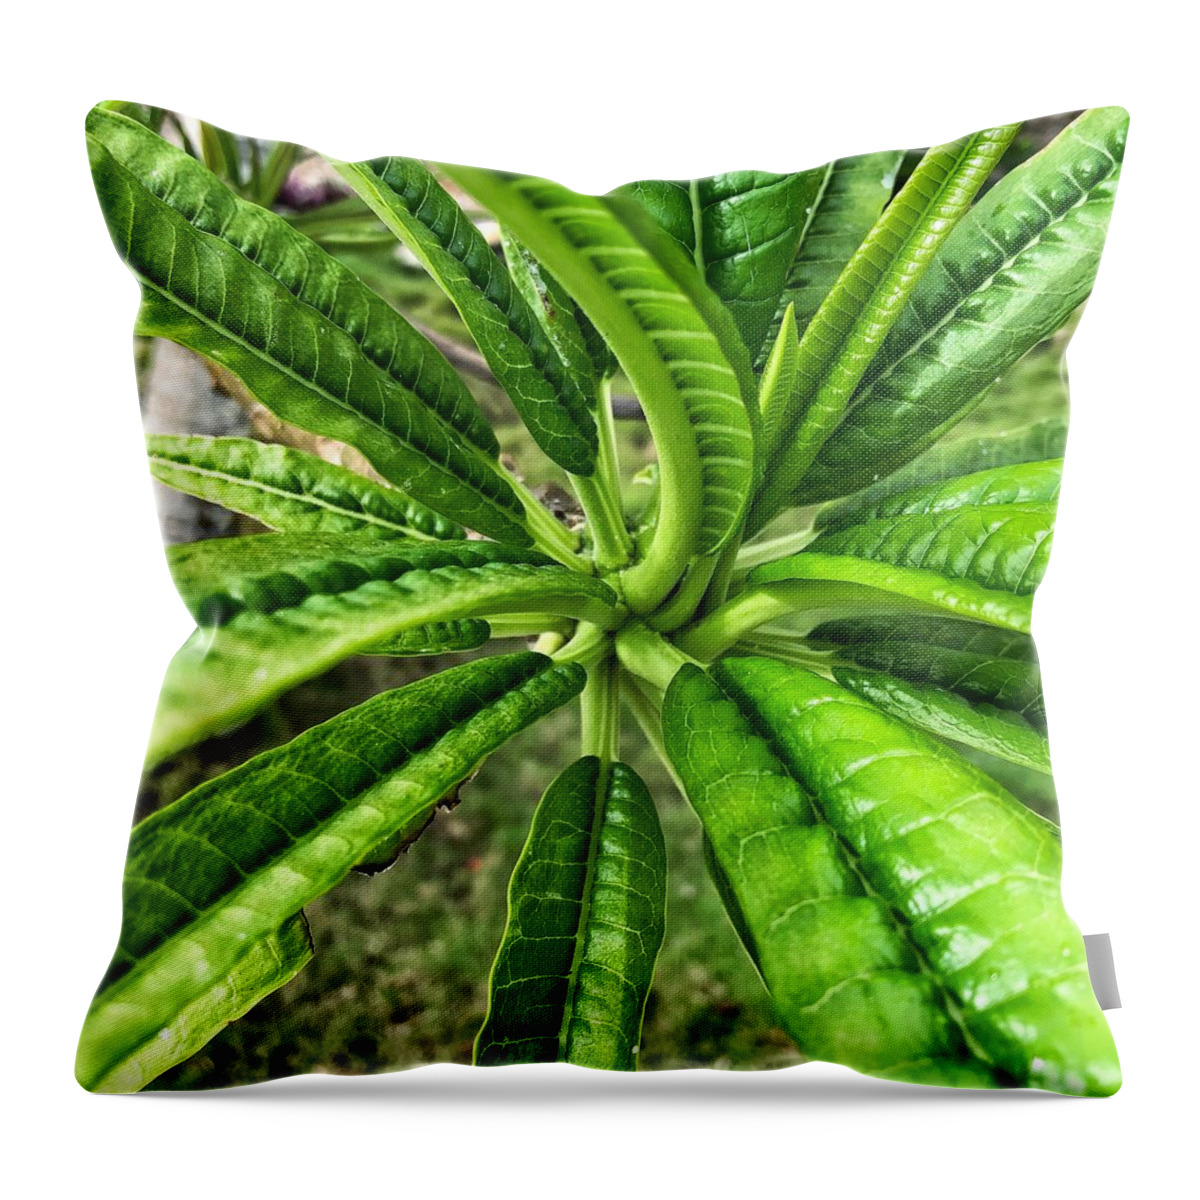 Tropical Climate Throw Pillow featuring the photograph Garden Croton Plant by Jori Reijonen